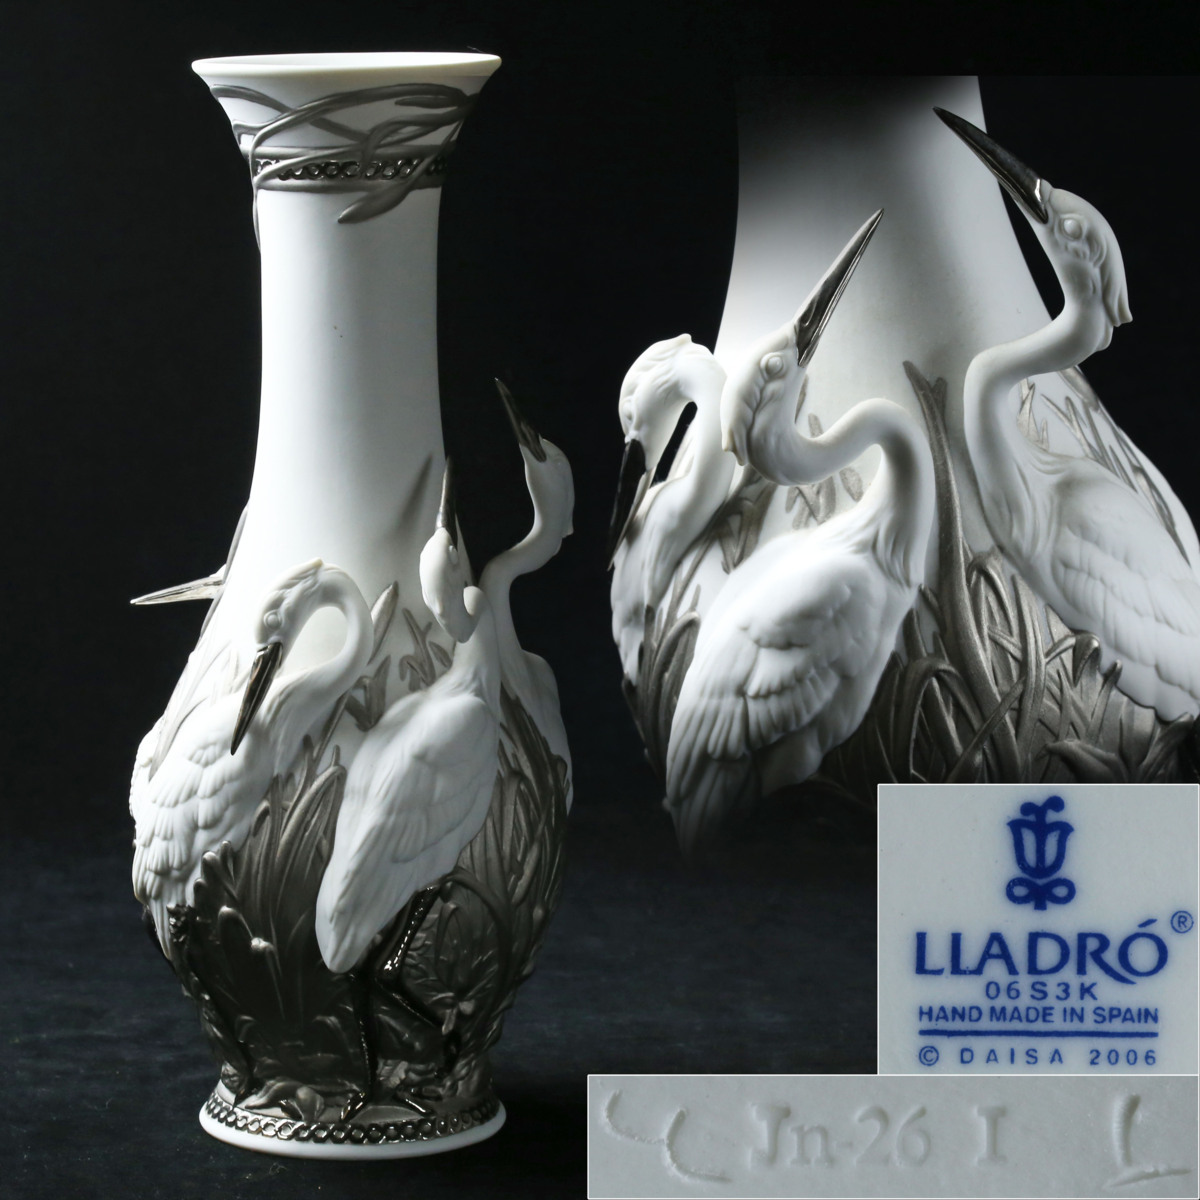 【昊】極上品 本物保証 LLADRO リヤドロ 「白サギの王国」 花瓶 高さ35.2cm 磁器人形[13D18Bi] _画像1